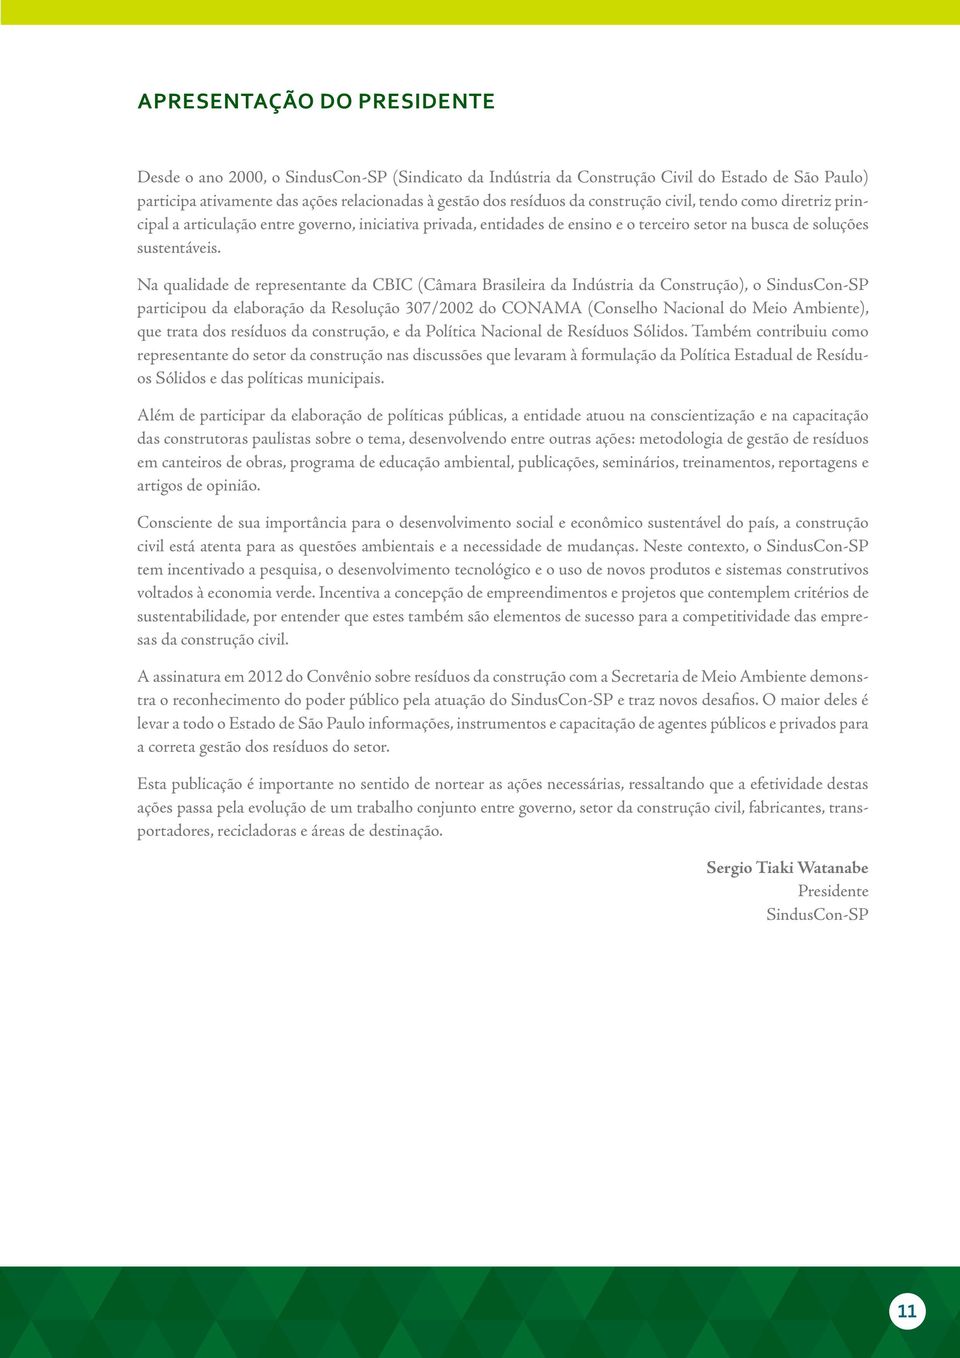 Na qualidade de representante da CBIC (Câmara Brasileira da Indústria da Construção), o SindusCon-SP participou da elaboração da Resolução 307/2002 do CONAMA (Conselho Nacional do Meio Ambiente), que